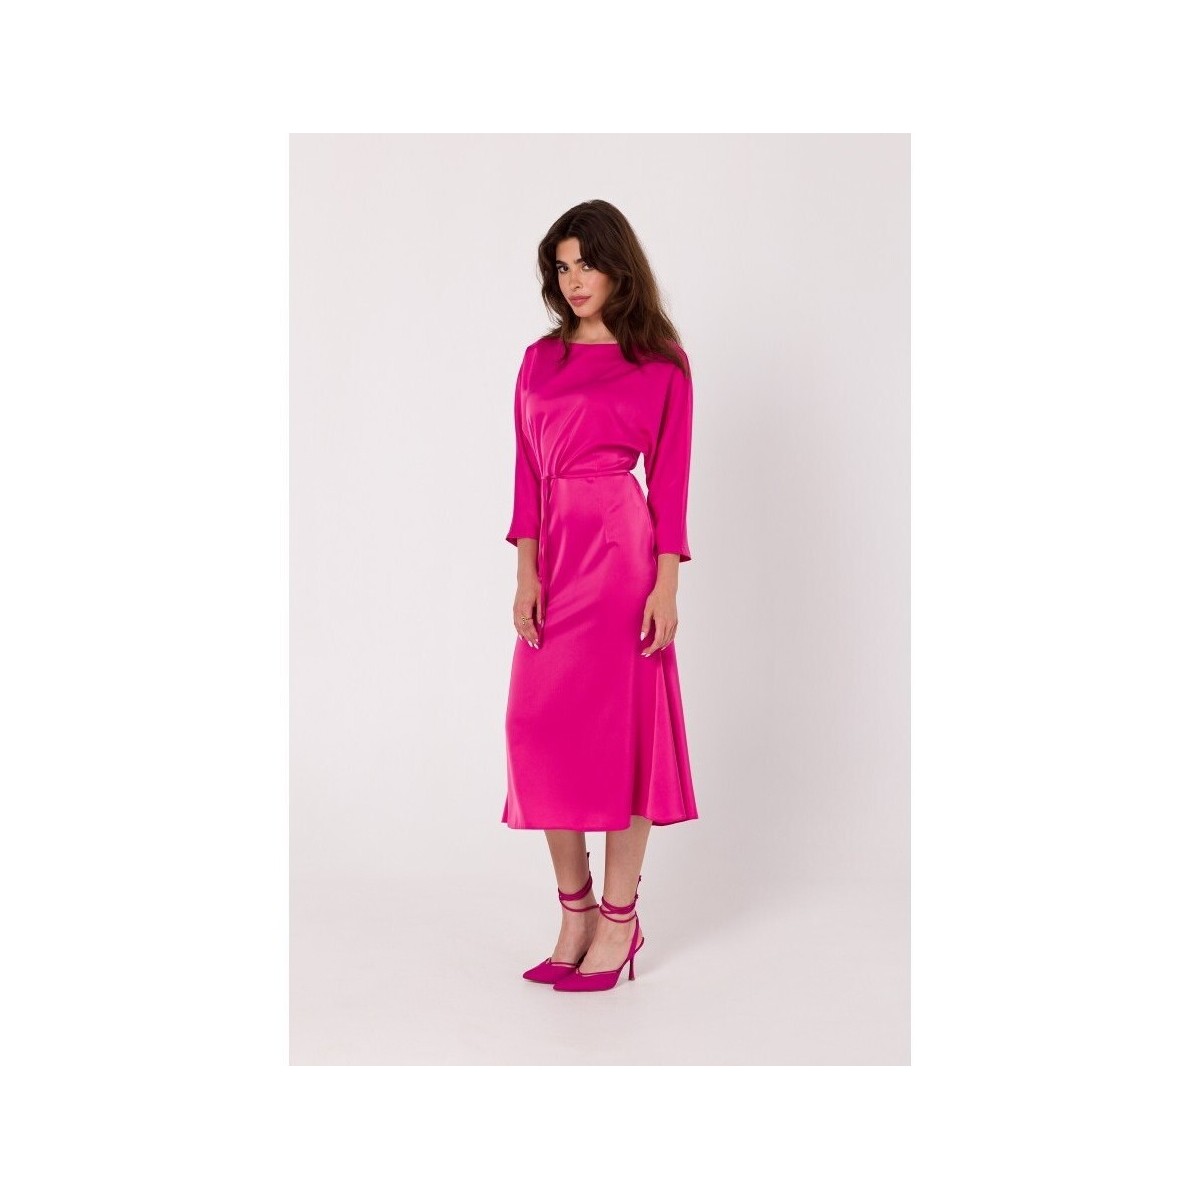 Textil Ženy Krátké šaty Makover Dámské midi šaty Eubunga K177 růžová Růžová